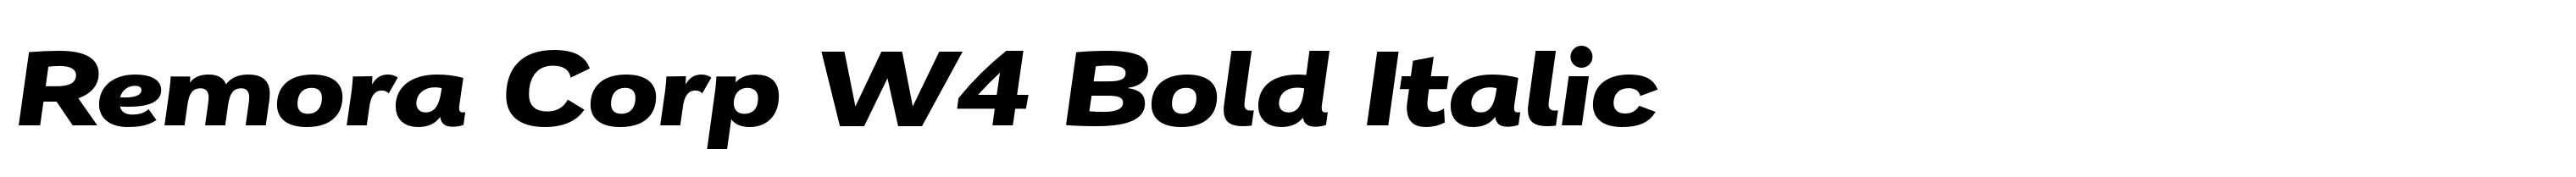 Remora Corp W4 Bold Italic